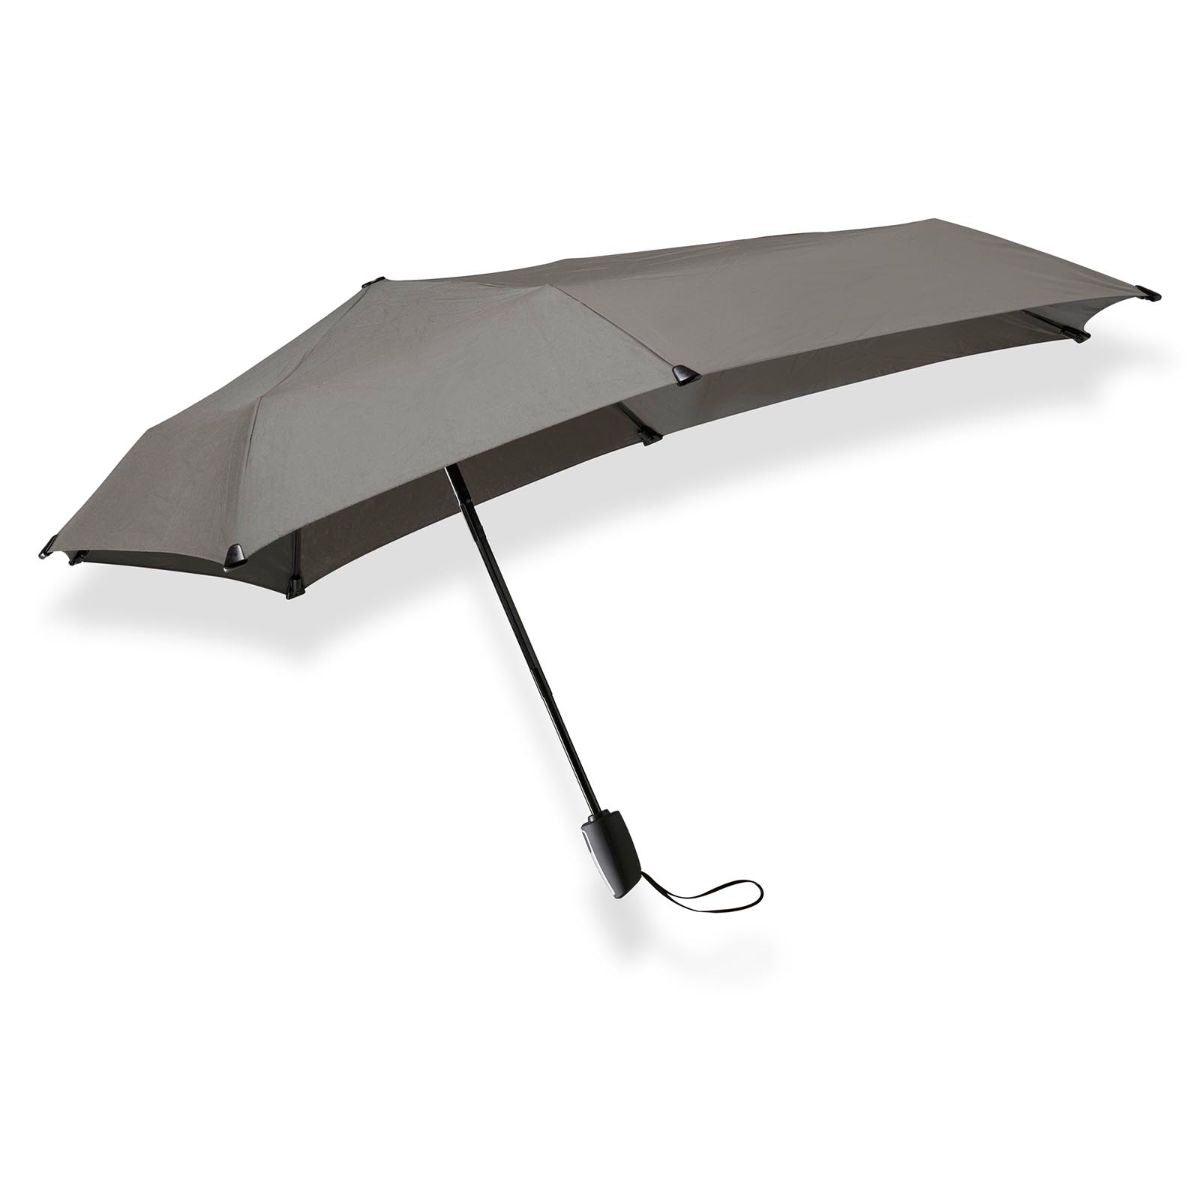 Senz paraplu automatic open grijs #kleur_grijs